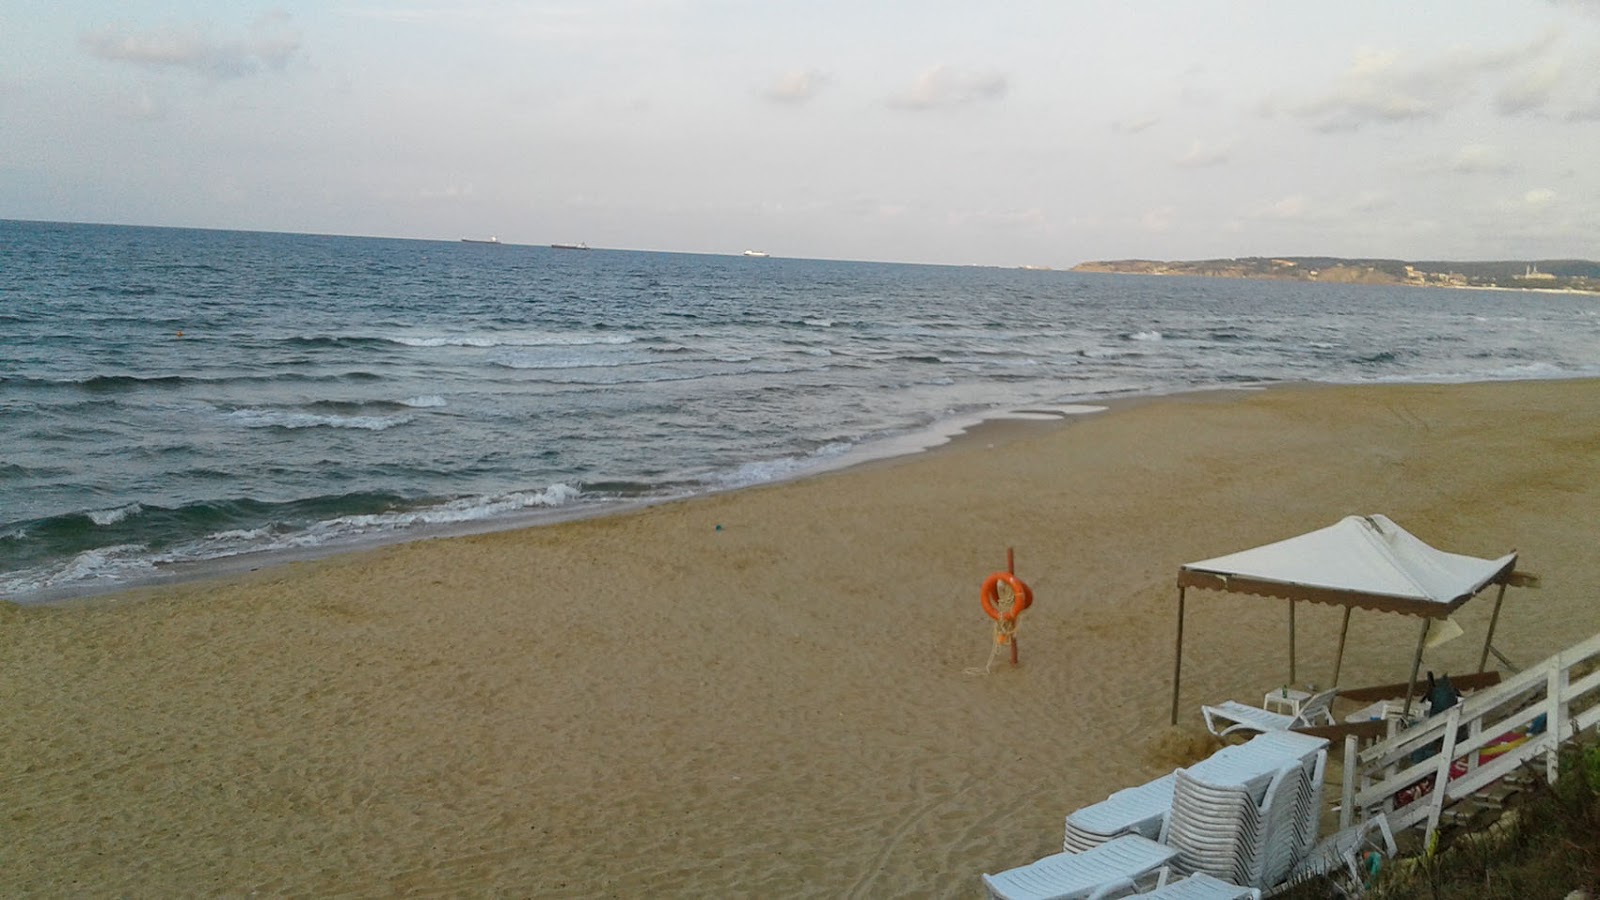 Foto von Suma beach mit geräumige bucht